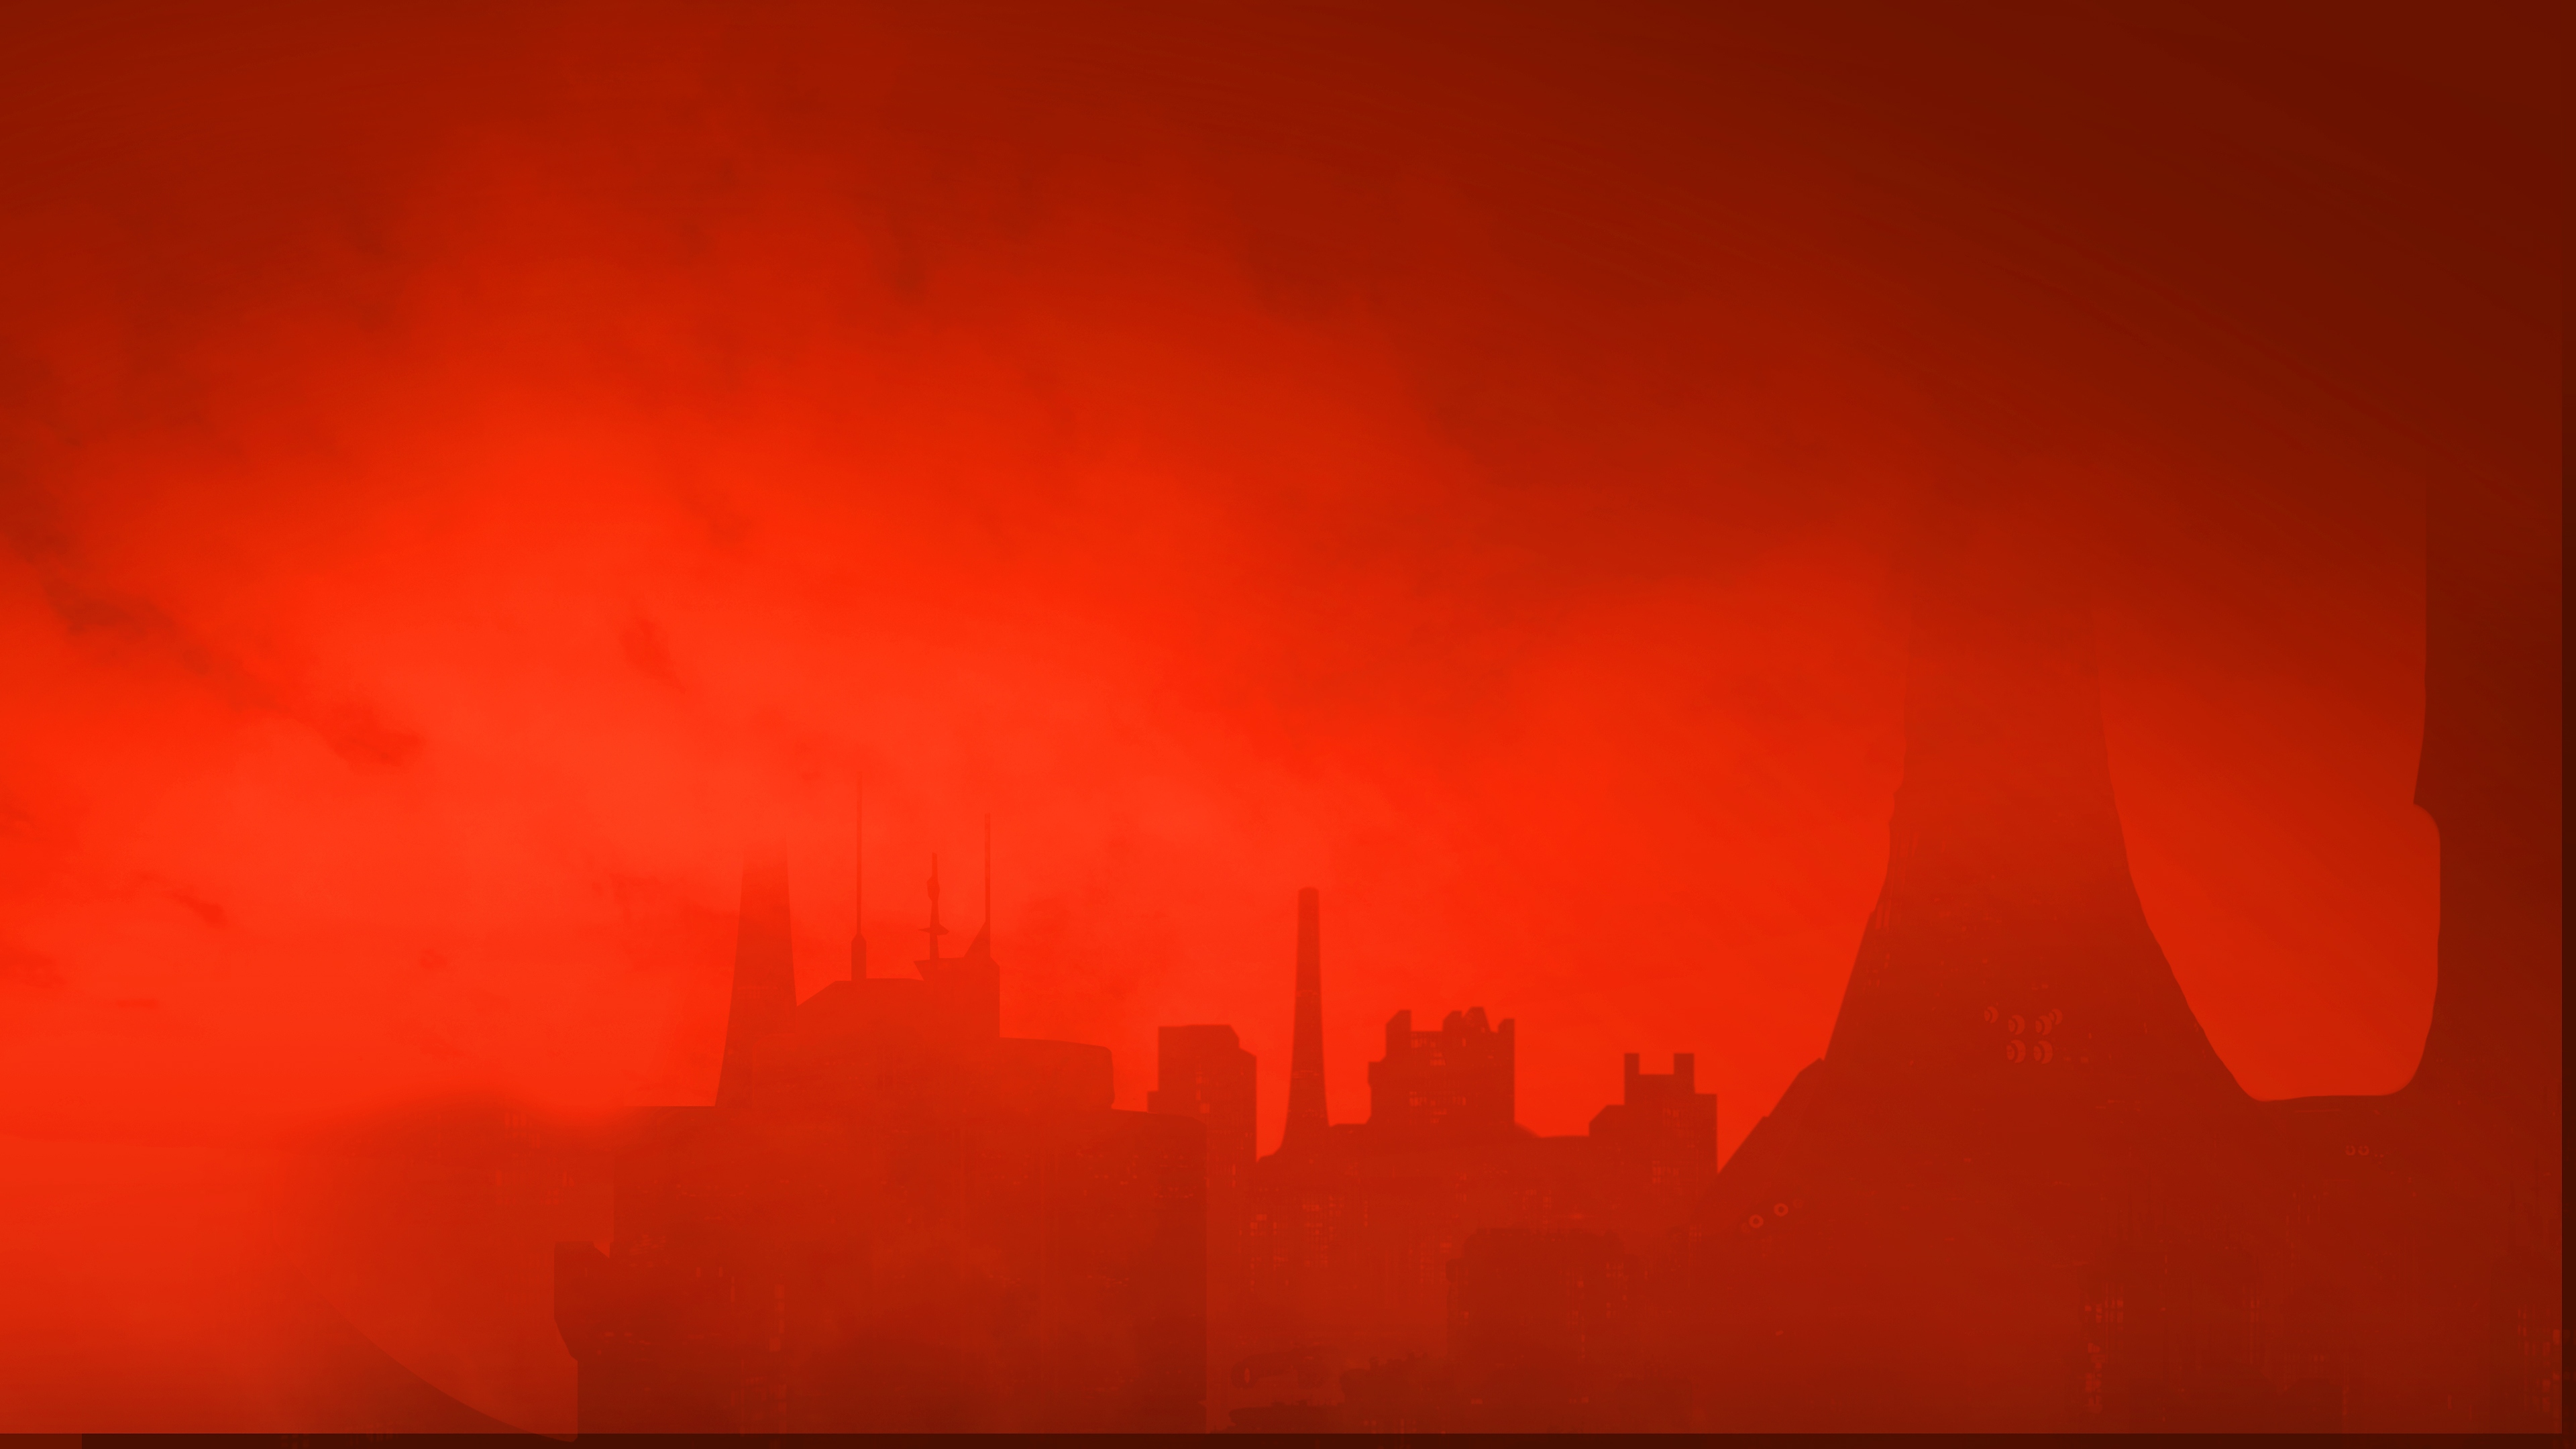 The Ascent – obrázek na pozadí – panorama města pod červenou oblohou